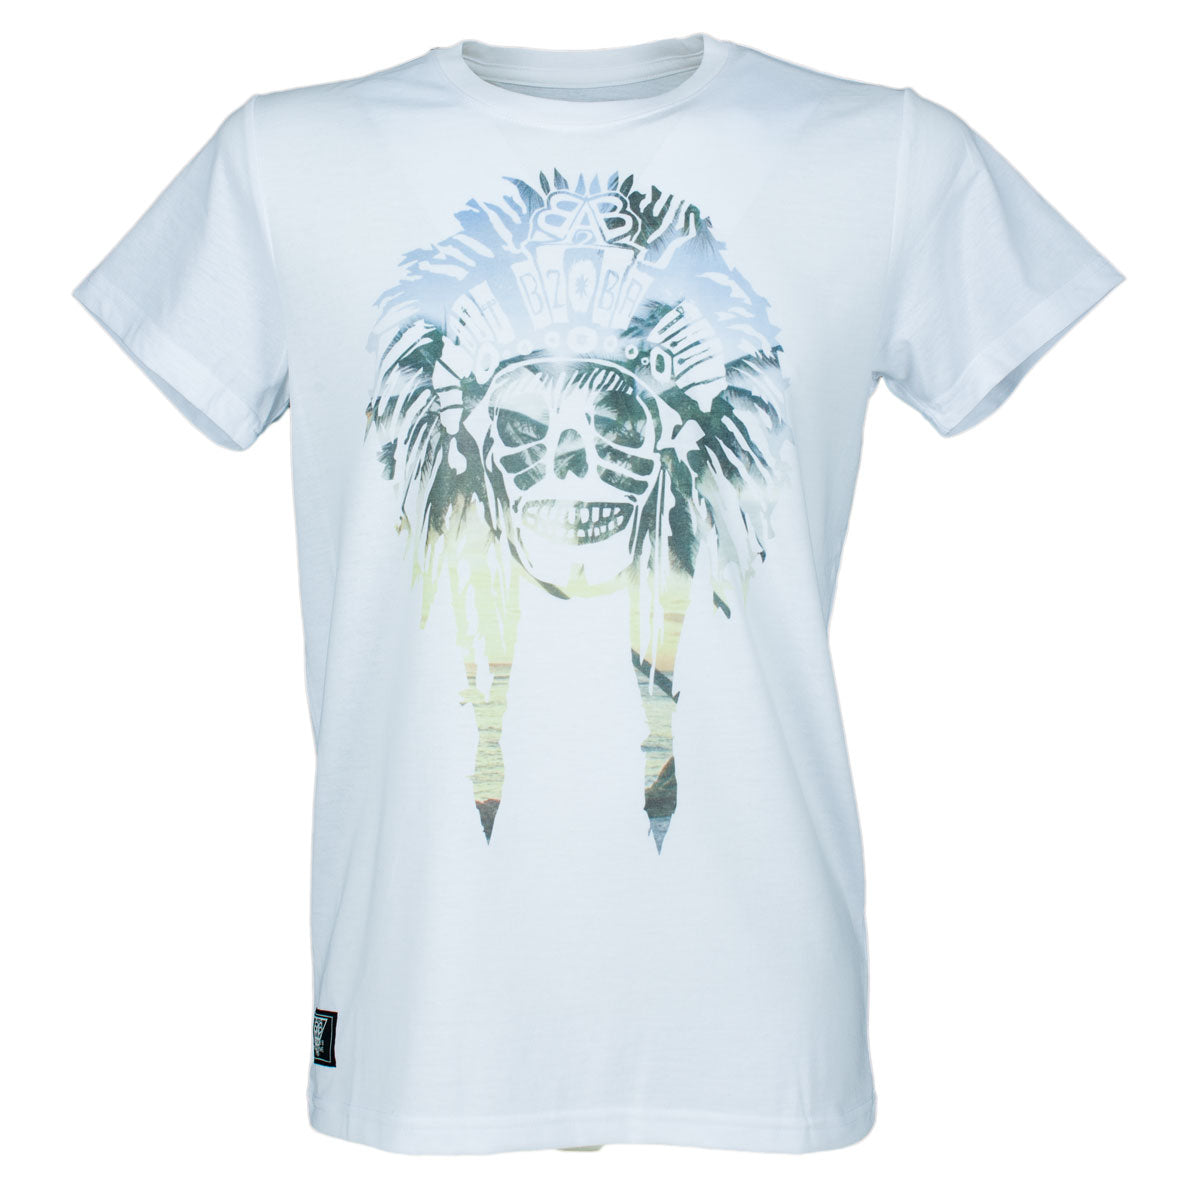 Indiskull T-Shirt - B2BA Clothing white / S